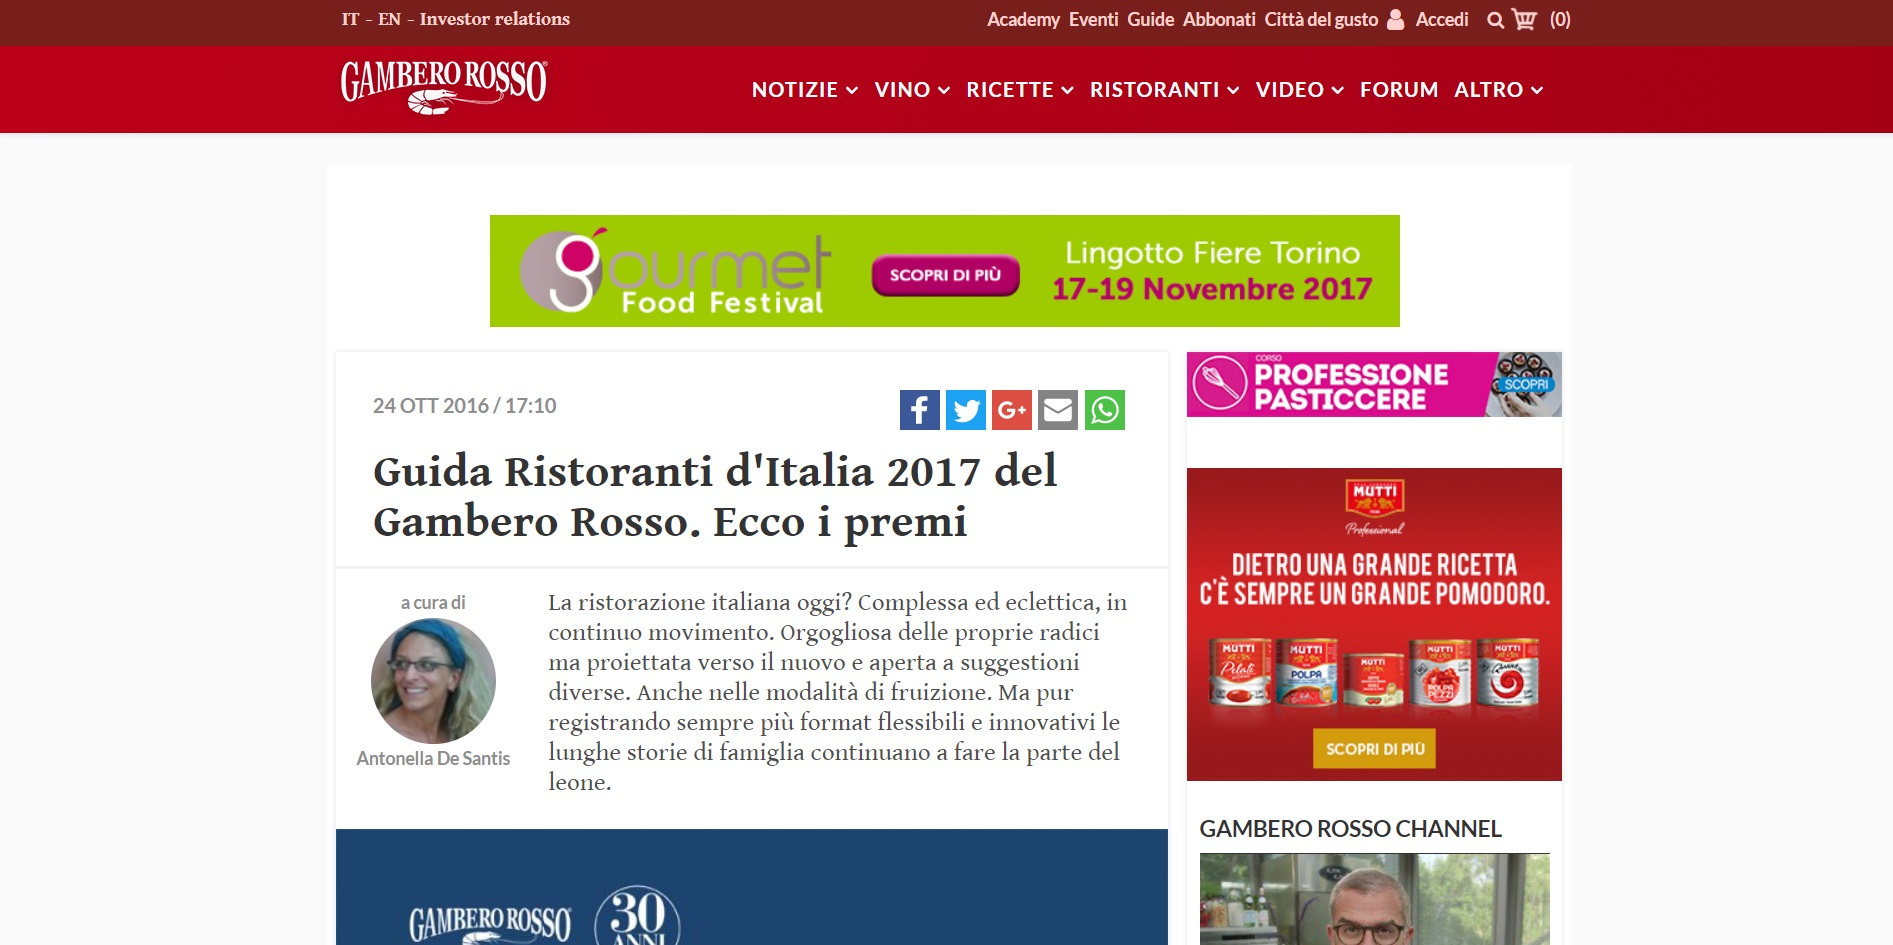 Guida Ristoranti d'Italia 2017 del Gambero Rosso. Ecco i premi